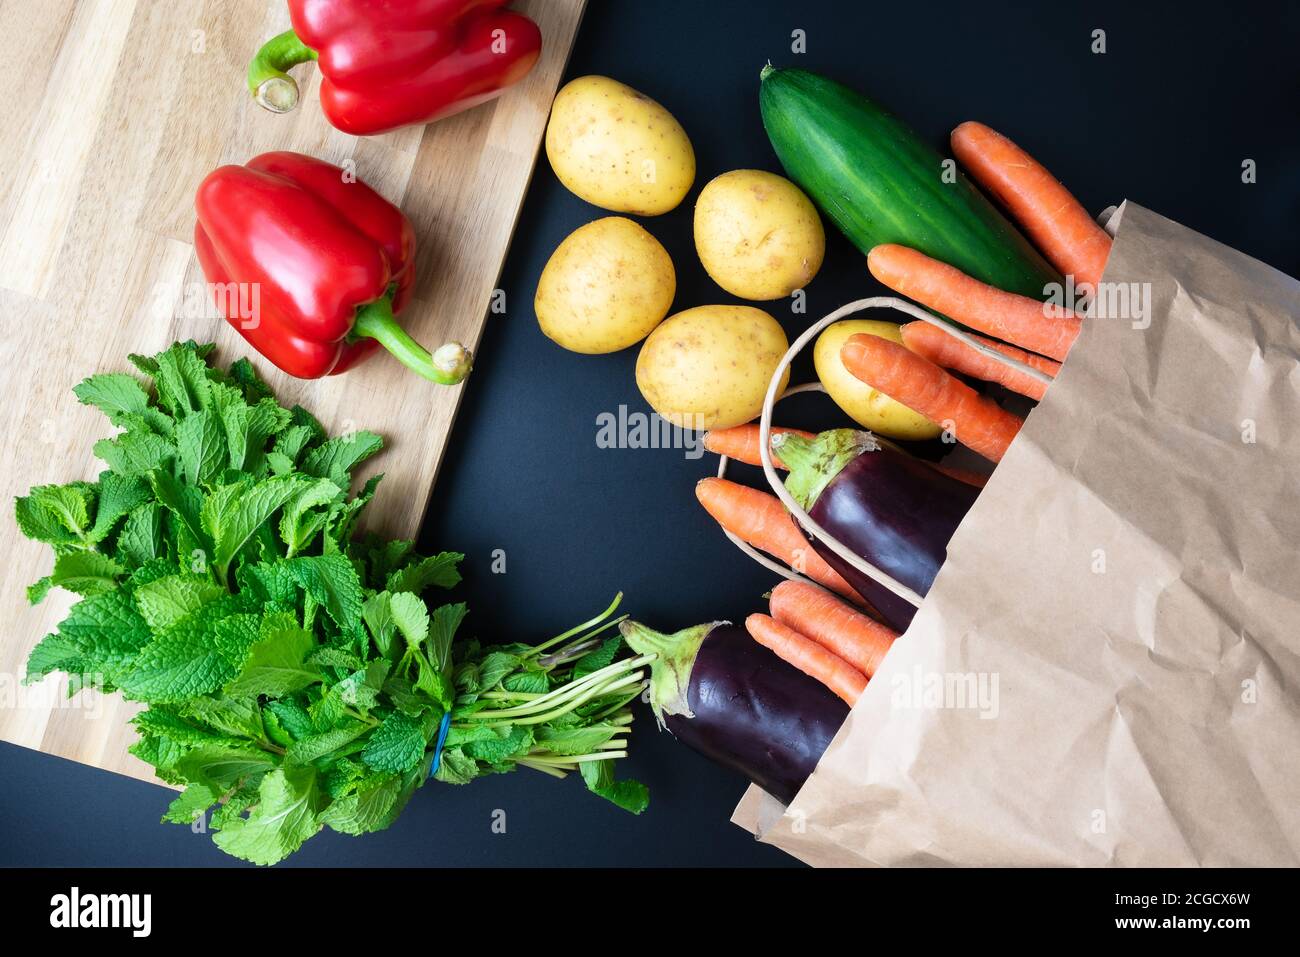 verdure biologiche fresche che fuoriescono dalla borsa della spesa di carta sul banco della cucina scura con tagliere di legno, cibo sano e concetto di cucina Foto Stock